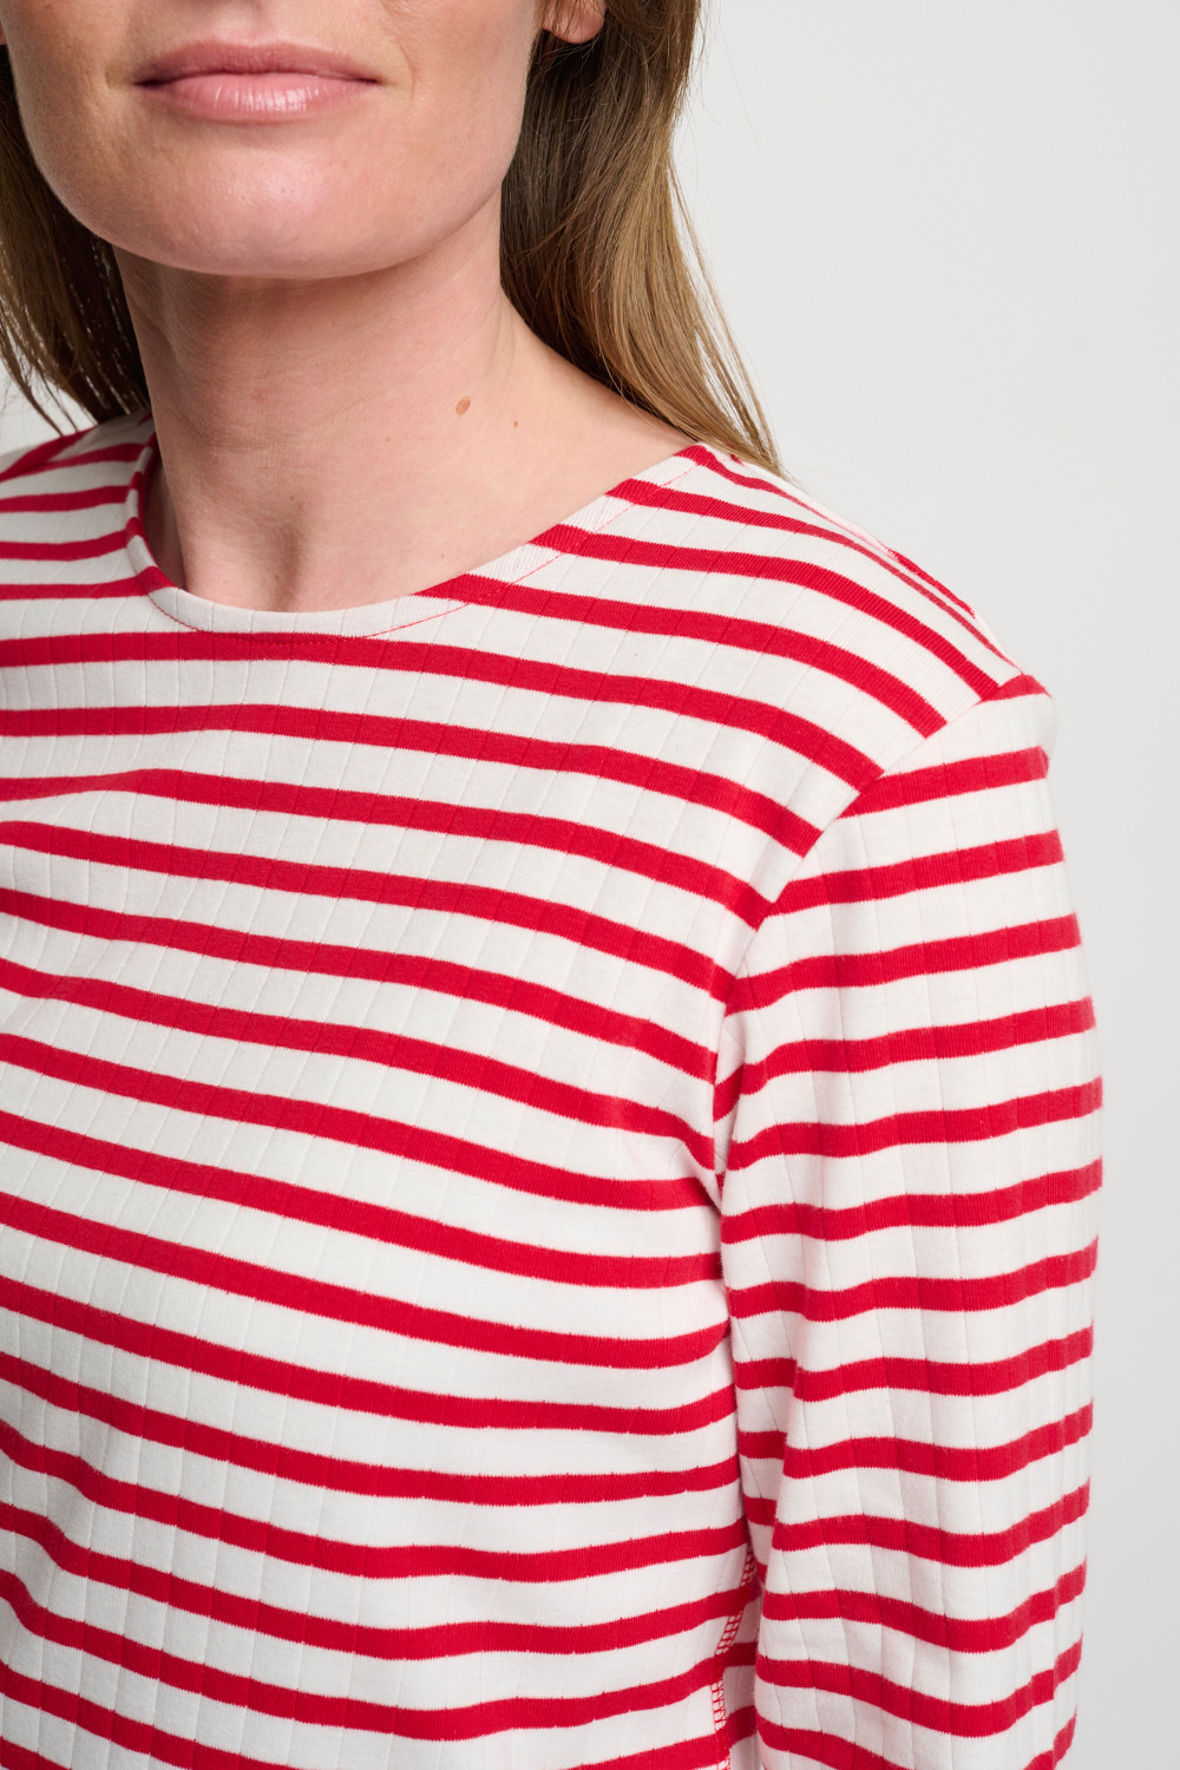 B. Coastline stribet casual t-shirt i rød og off white - Hos Lohse